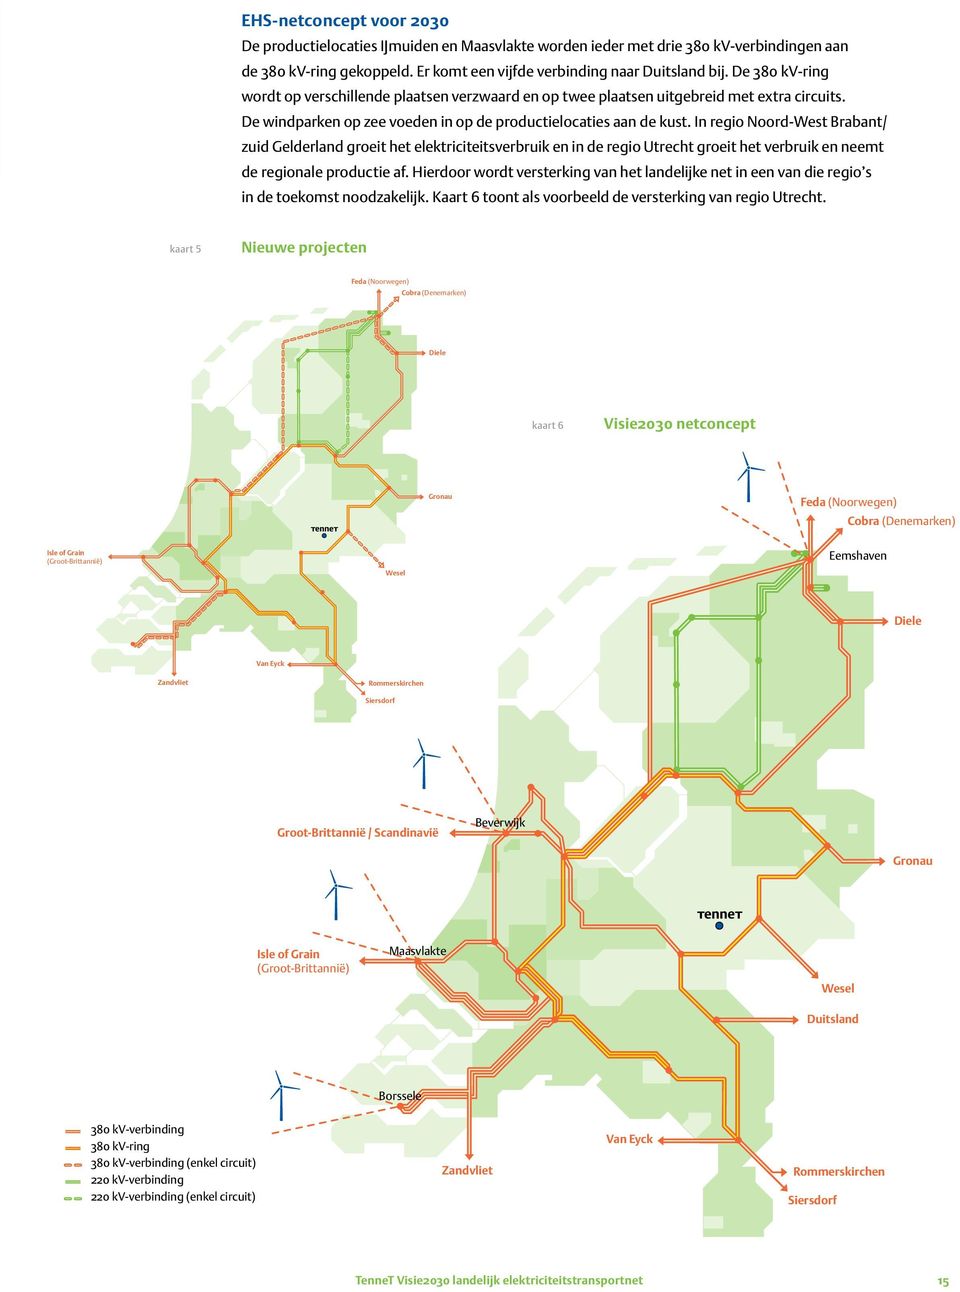 In regio Noord-West Brabant/ zuid Gelderland groeit het elektriciteitsverbruik en in de regio Utrecht groeit het verbruik en neemt de regionale productie af.